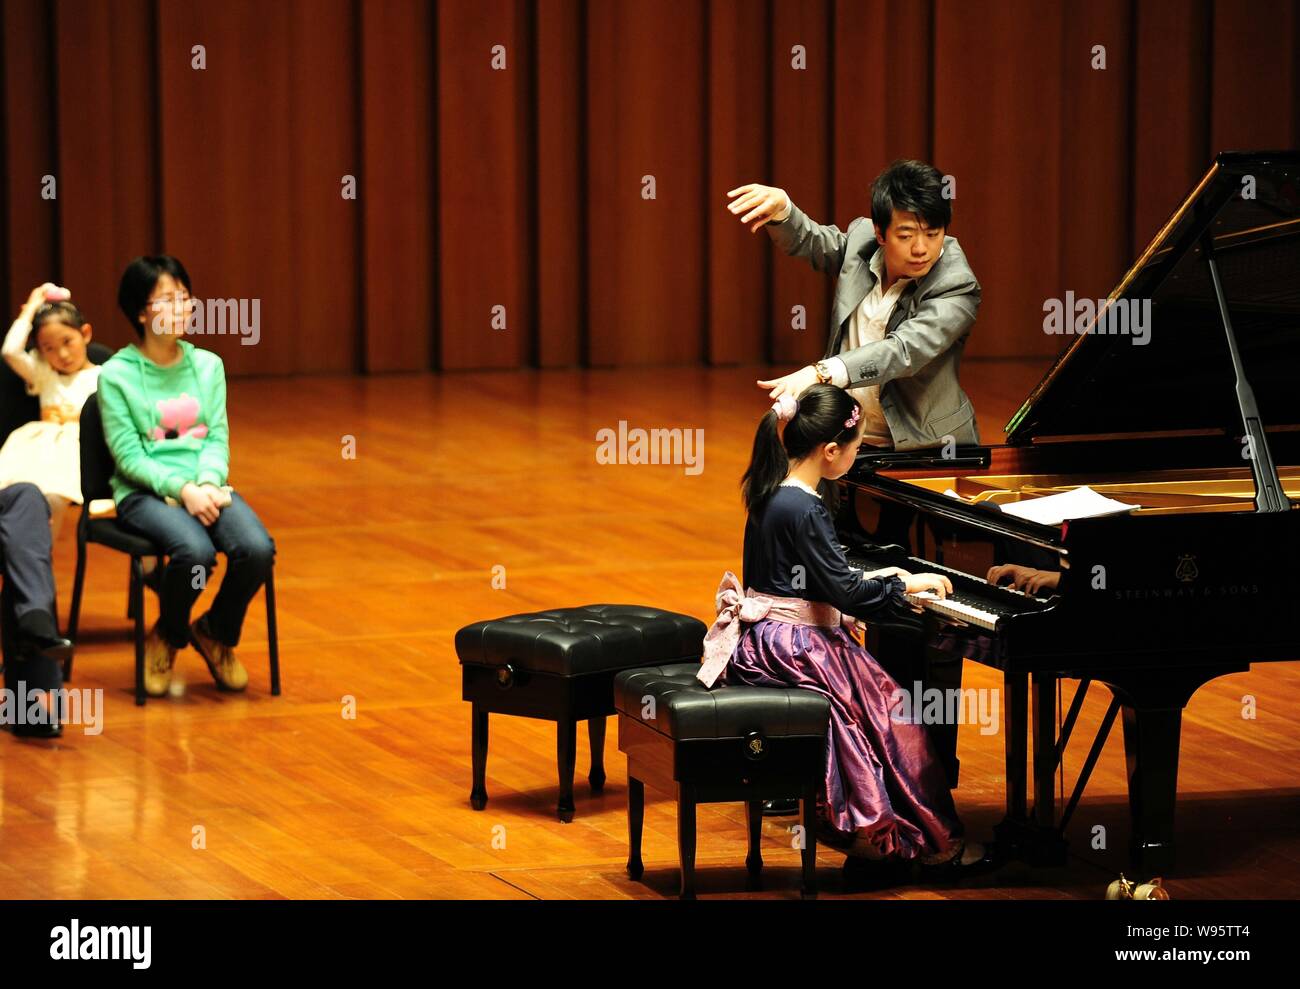 Chinese pianist performing Banque de photographies et d'images à haute  résolution - Alamy